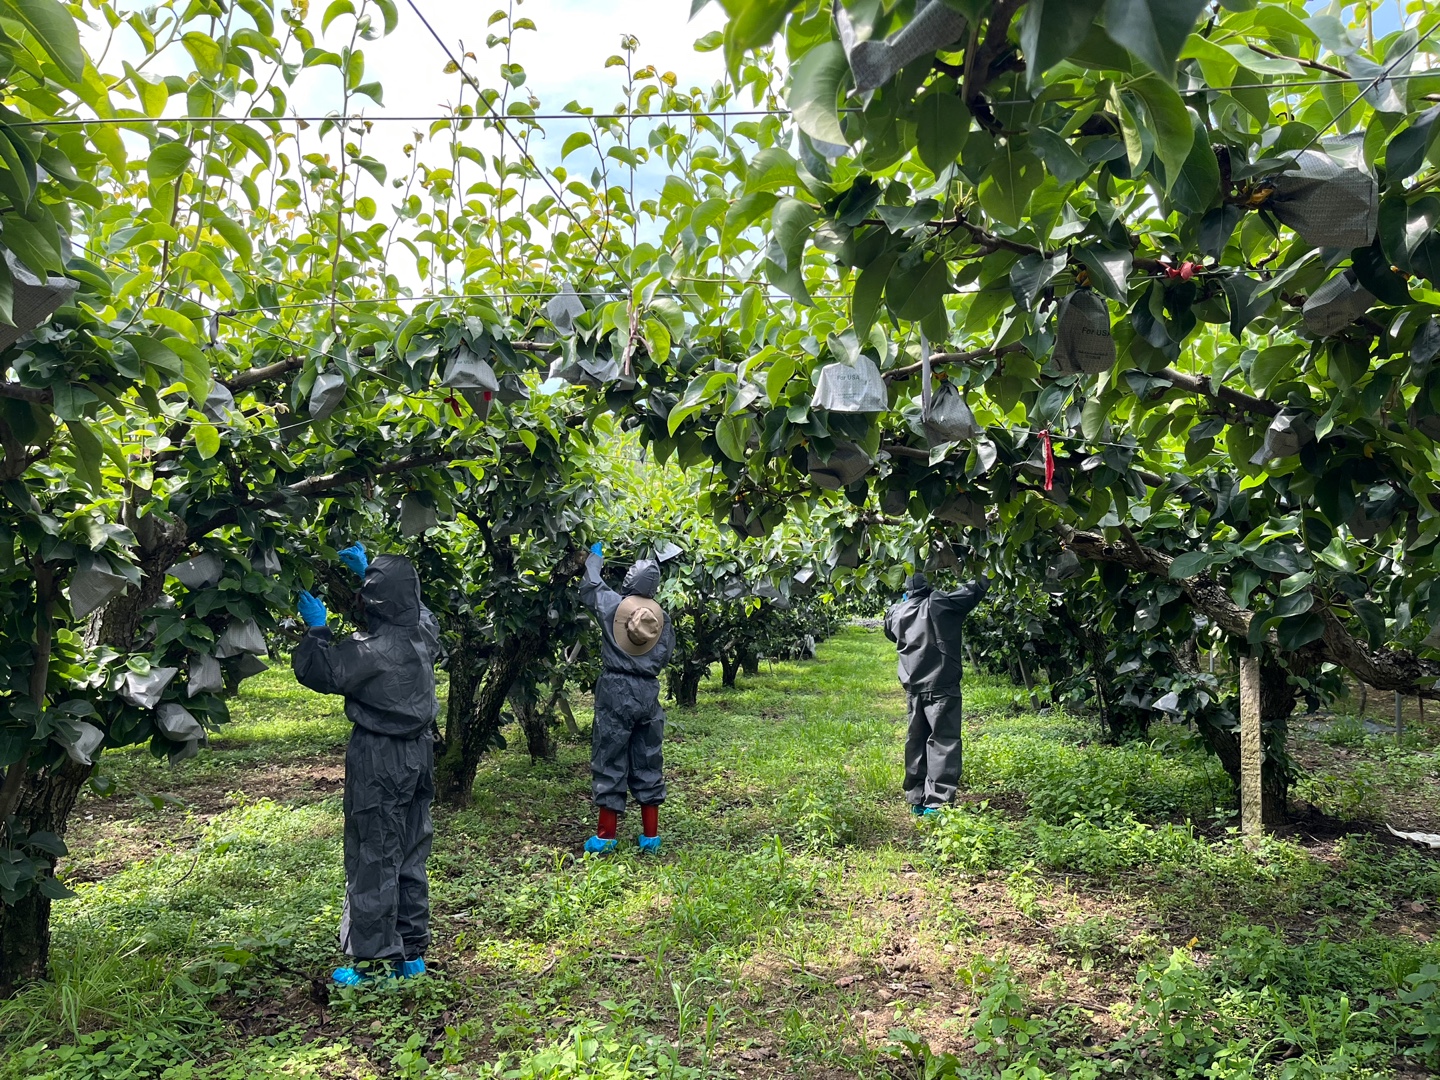 경주시가 과수화상병 발생을 막기 위해 사과, 배 등 과수 재배 밀집지역을 상대로 정밀 예찰을 실시하고 있는 모습.